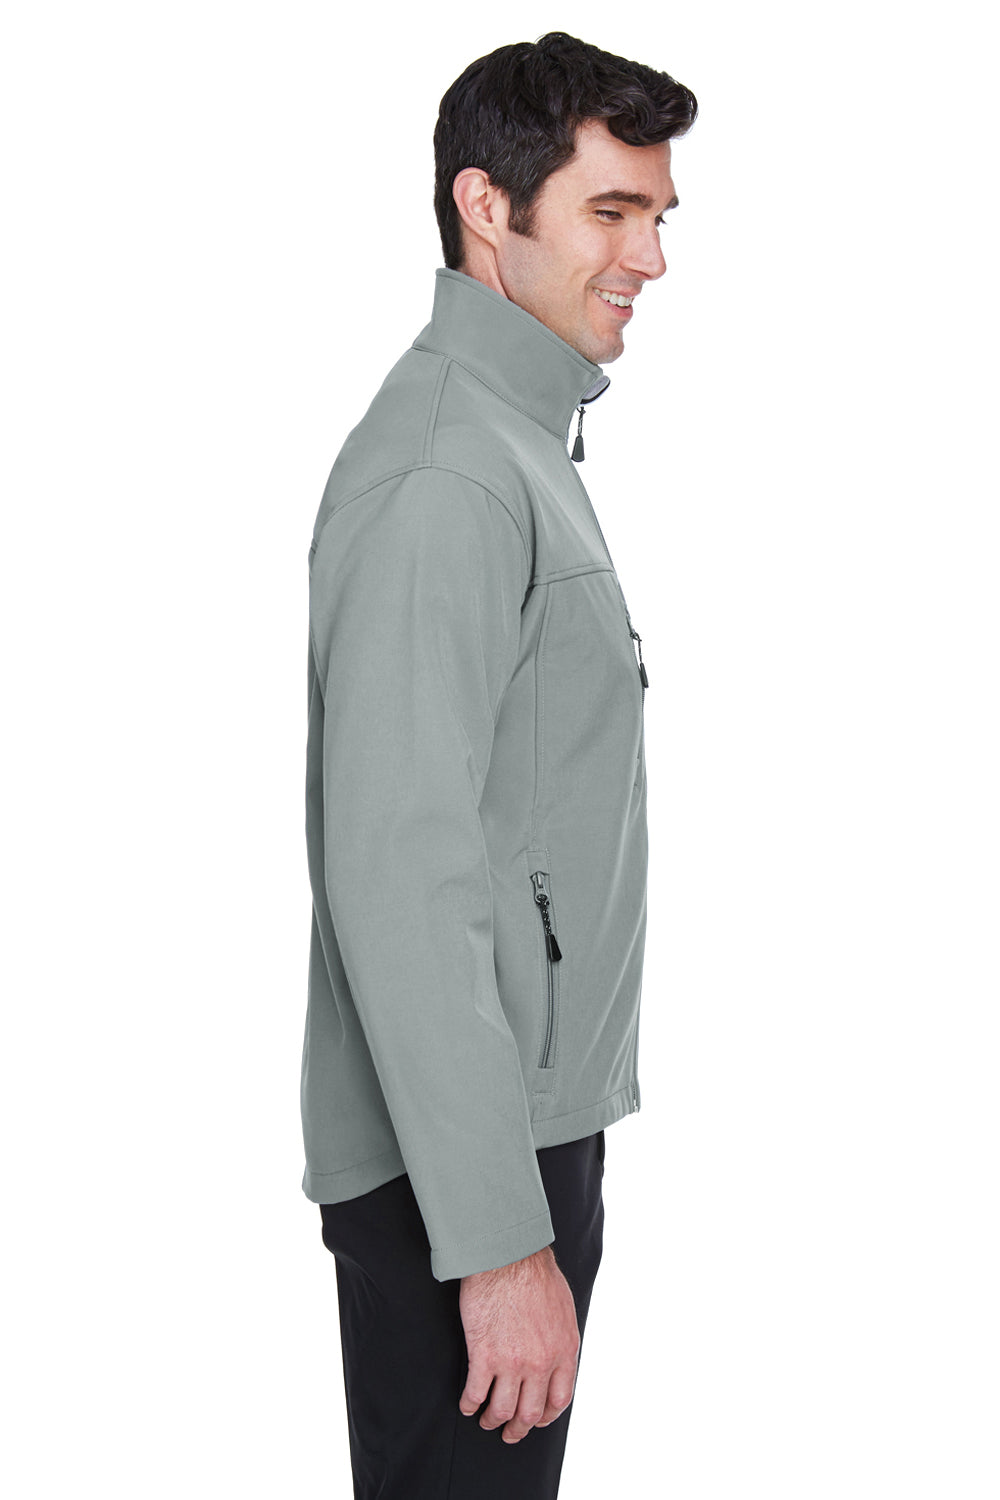 Devon & Jones D995 Mens Wind & Water Resistant Full Zip Jacket Charcoal Grey Side